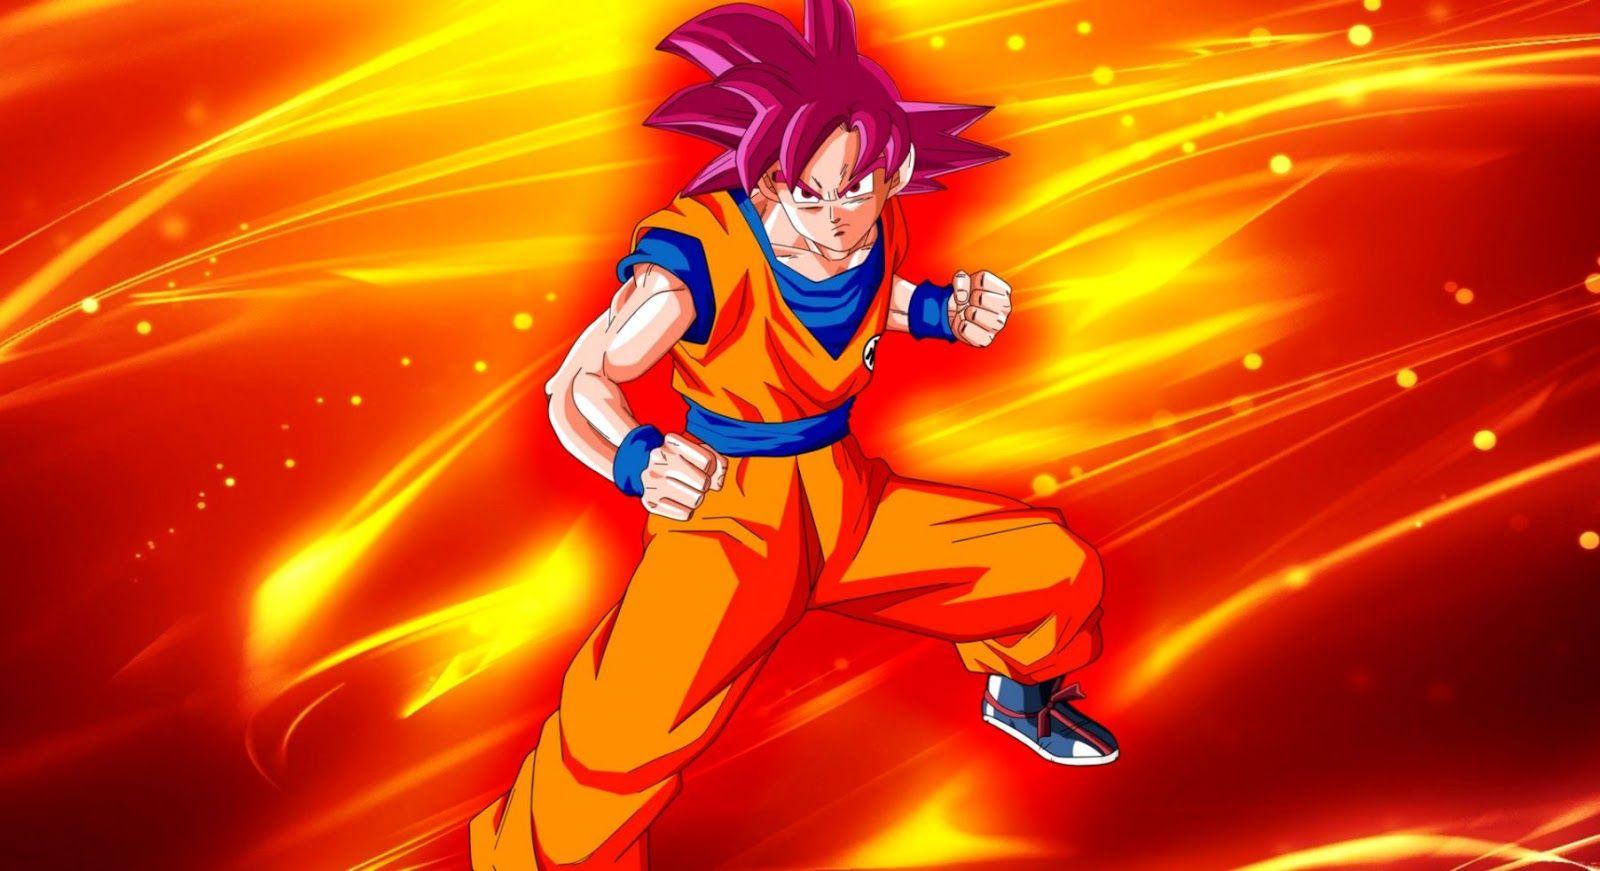 Dragon Ball Z Goku Super Saiyan God Wallpapers - Top Free Dragon Ball Z